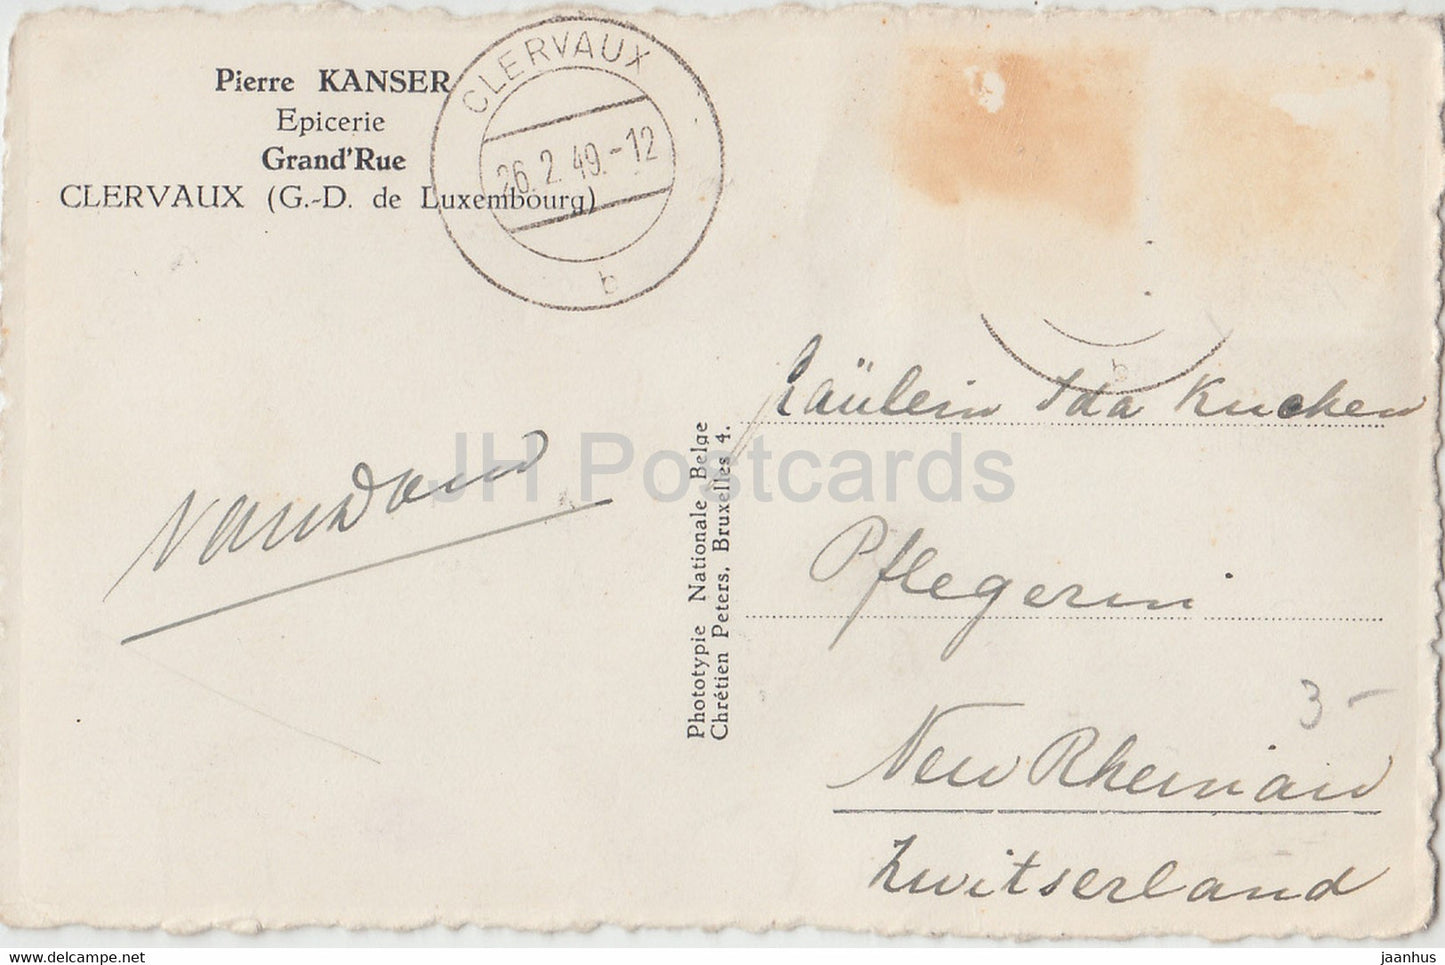 Clervaux - L'Abbaye - Pierre Kanser - 262 - alte Postkarte - 1949 - Luxemburg - gebraucht